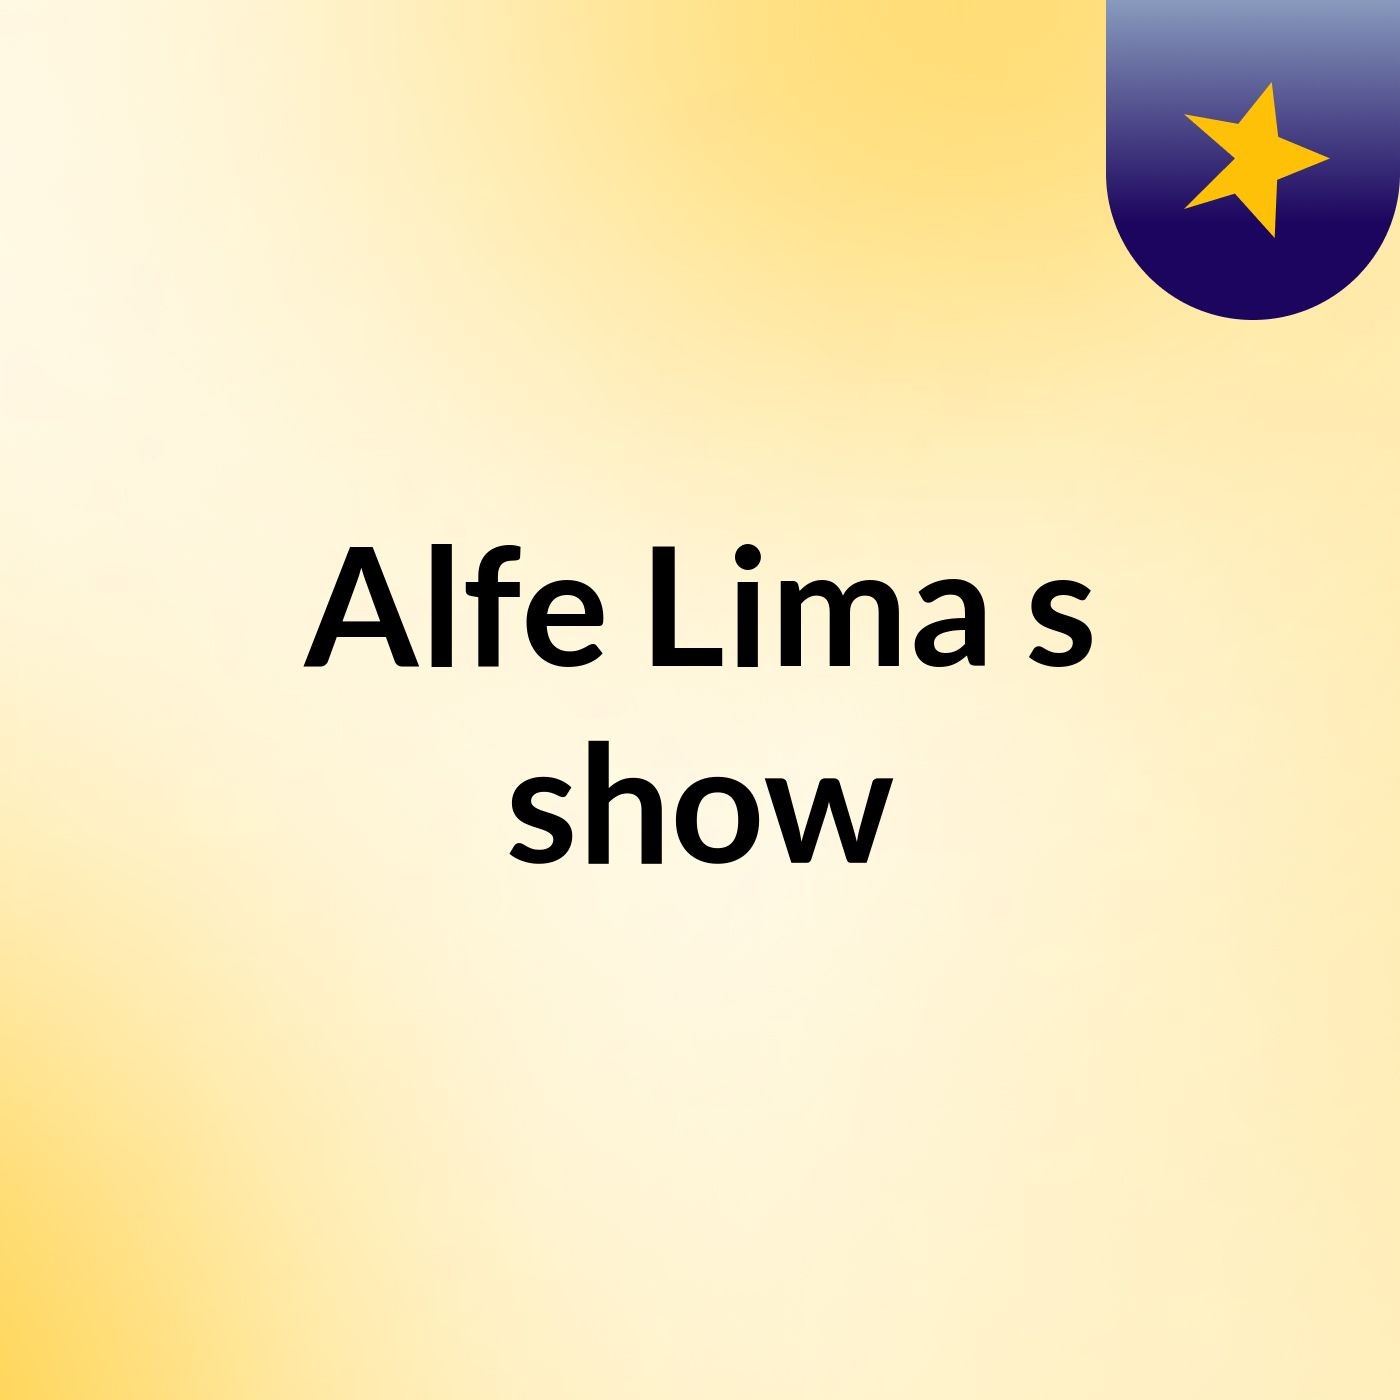 Alfe Lima's show